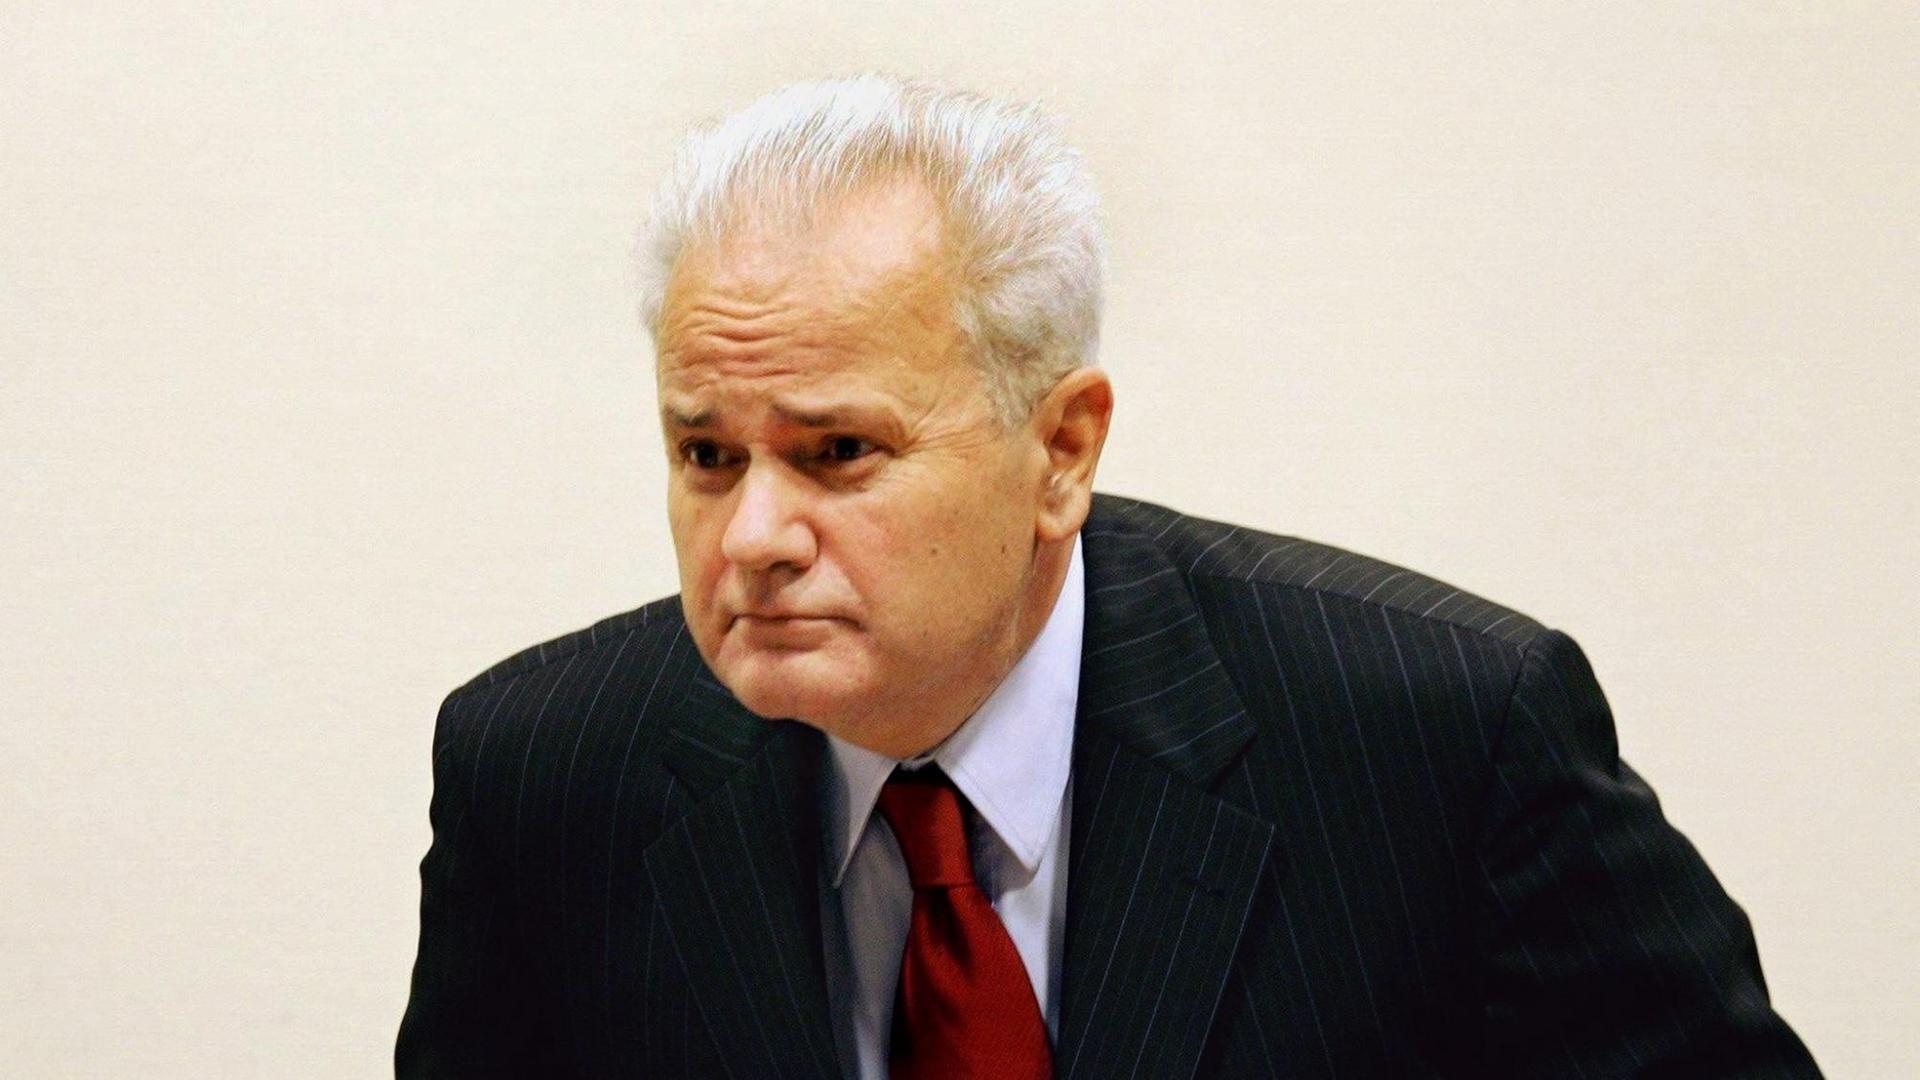 Der frühere jugoslawische Präsident Slobodan Milosevic nimmt am 05.07.2004 vor dem UN-Tribunal in Den Haag Platz. Die angeschlagene Gesundheit von Milosevic zwingt die Richter des UN-Tribunals zu einer «radikalen Überprüfung» der Verfahren in dem seit zwei Jahren laufenden Kriegsverbrecher-Prozess. Dabei müssten vor allem die chronischen und wiederkehrenden Erkrankungen des an Bluthochdruck leidenden Angeklagten berücksichtigt werden, hat das Gericht am 05.07. angekündigt. Die Fortsetzung des Prozesses nach mehr als viermonatiger Pause wurde deshalb nach kurzer Debatte vertagt. Foto: Bas Czerwinski Pool dpa |